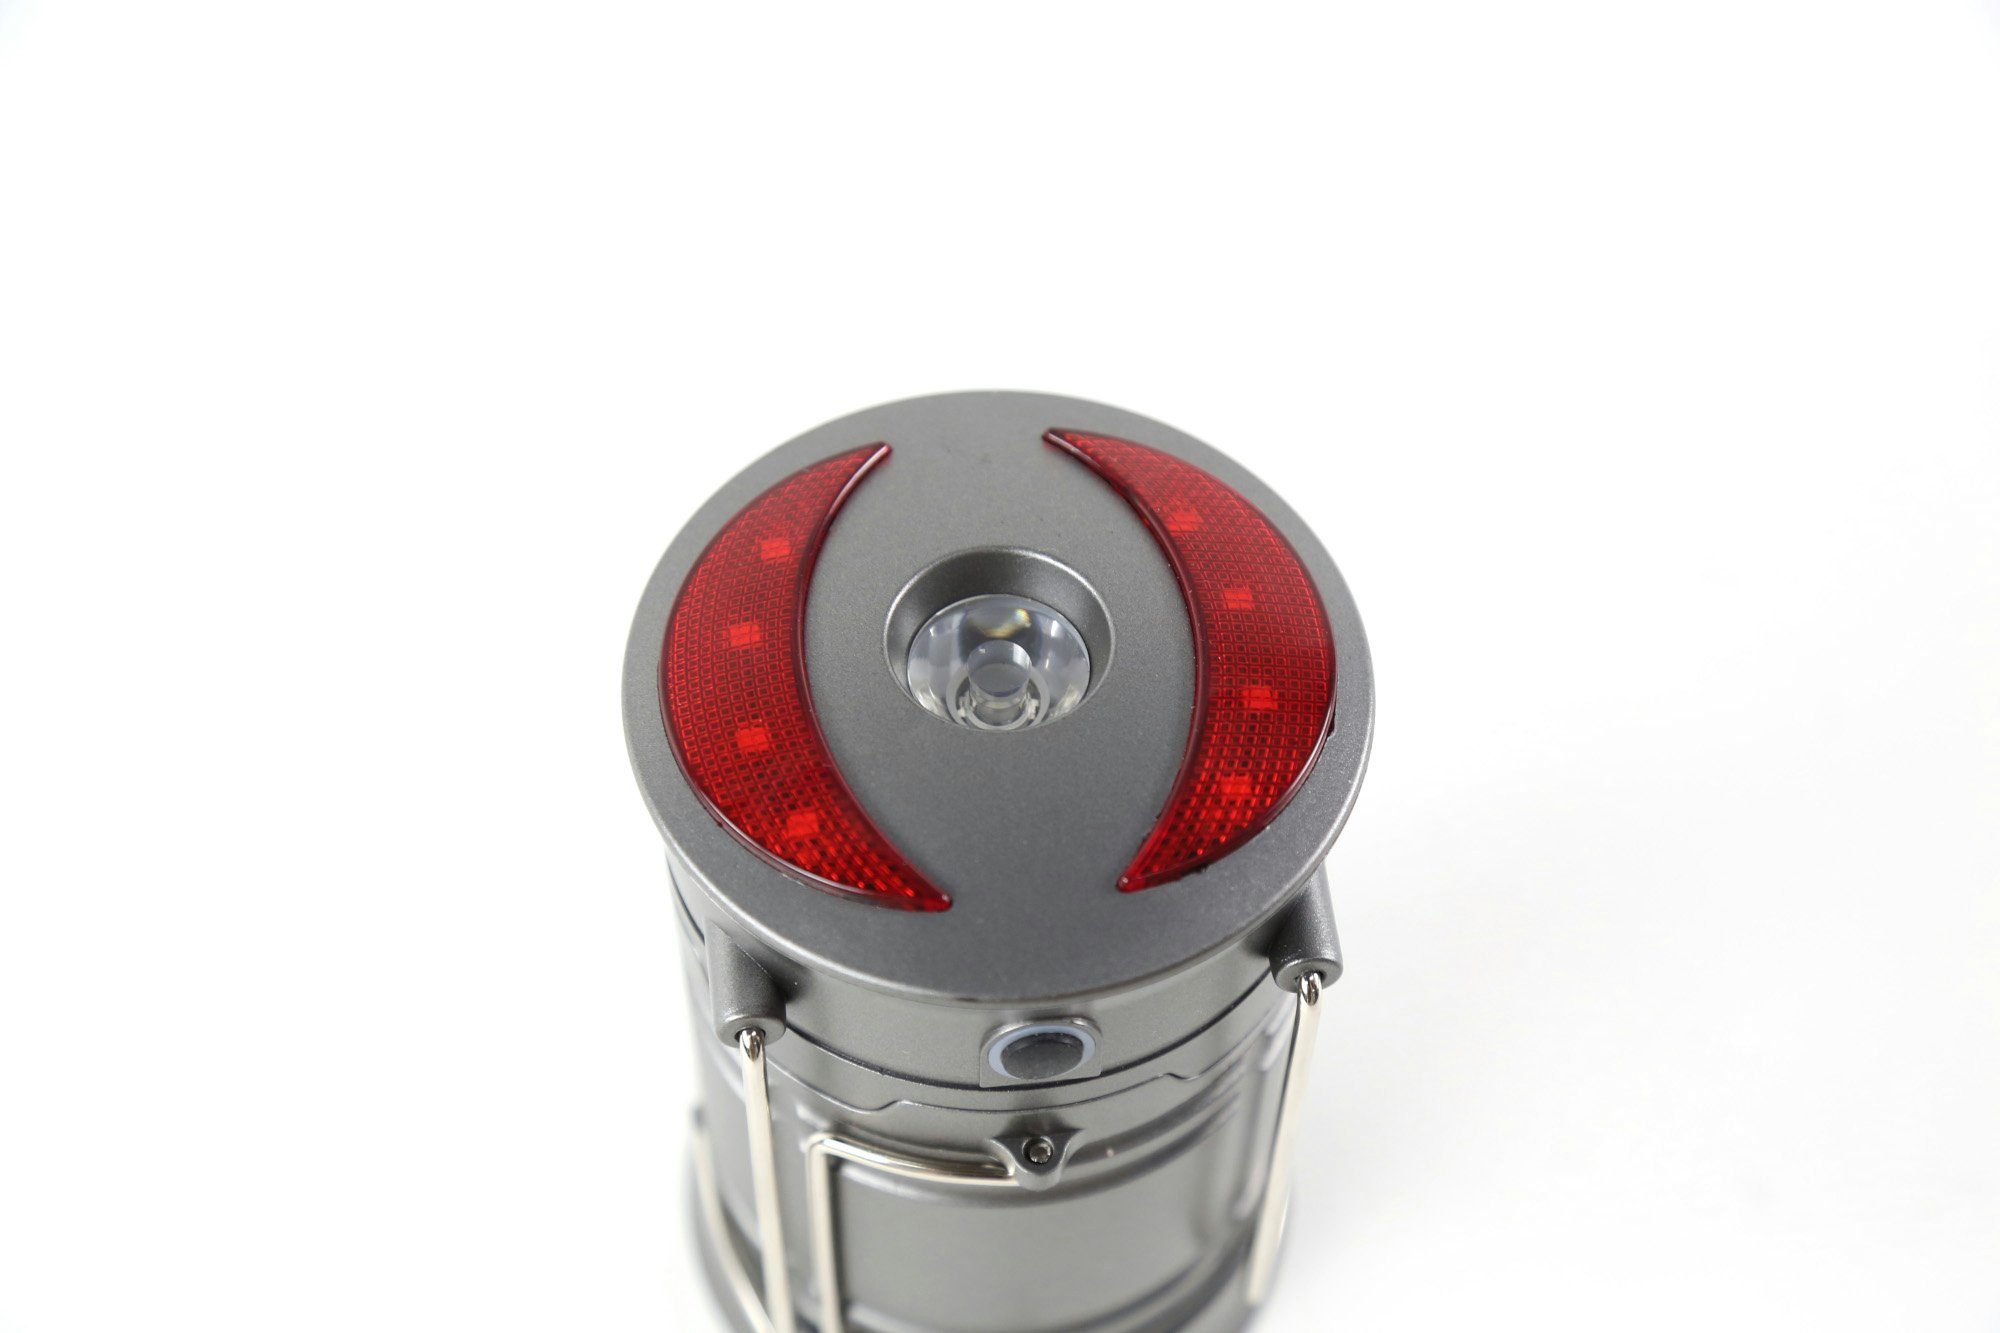 rot/weiße Outdoor 360 Laterne LED ONDIS24 batteriebetrieben ausziehbar Lumen Tischleuchte Multifunktionslampe Taschenlampe LED Handscheinwerfer, LED Camping